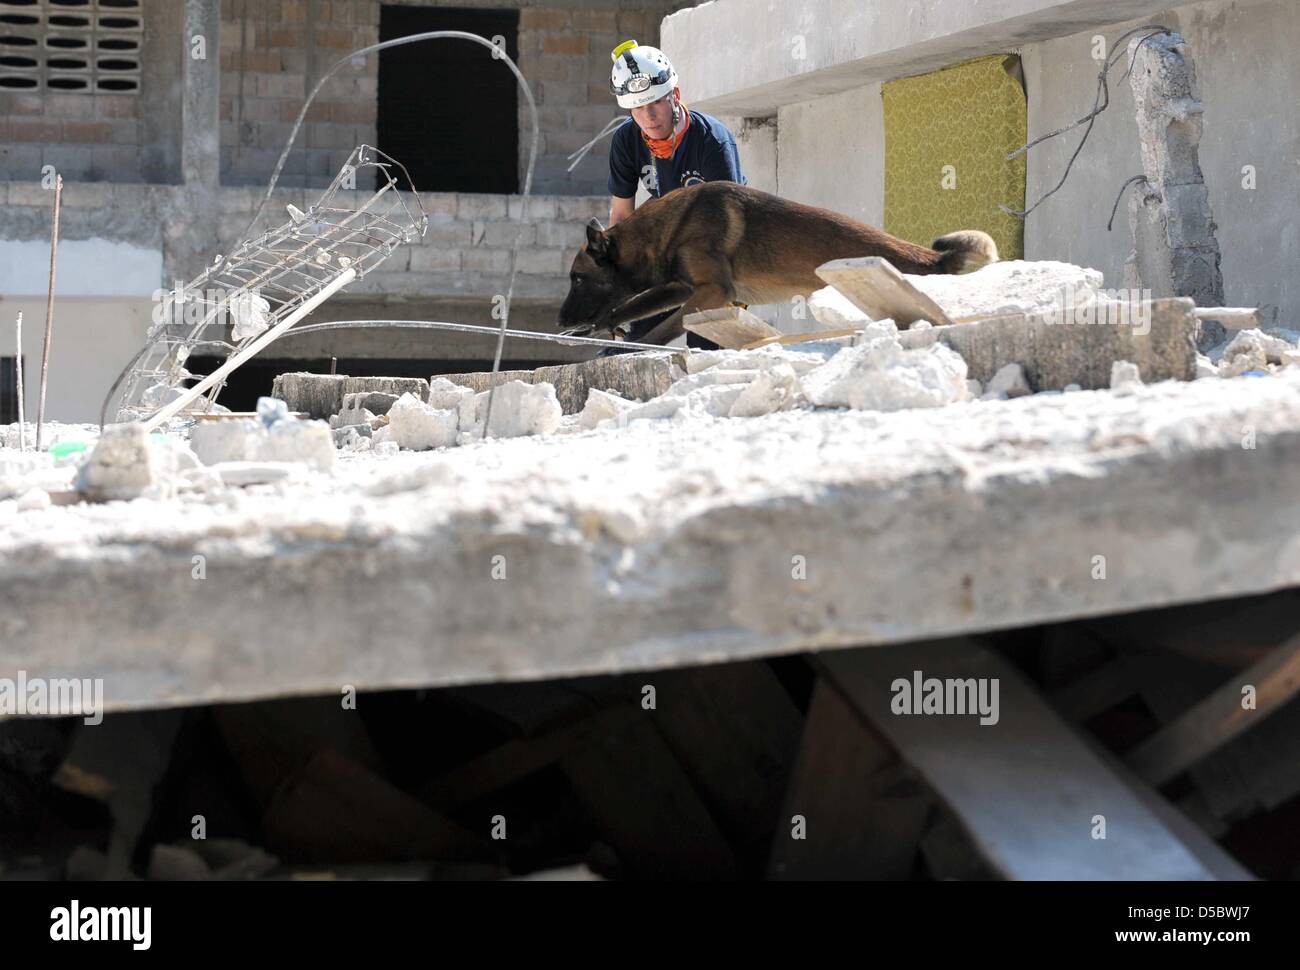 Ein Sniffer-Hund-Team von deutschen Rettungs- und Hilfskräfte Organisation katastrophenerschütterte (International Search and Rescue) sucht nach Überlebenden des Erdbebens am Dienstag in den Ruinen von Port-au-Prince, Haiti, 17 Januar 2010. Es wird befürchtet, dass die Erdbeben der Stärke 7 zwischen 50.000 und 100.000 Menschen getötet. Helfer, die Ankunft in Port-au-Prince wurden mit Chaos, Zerstörung, Pfähle o konfrontiert Stockfoto